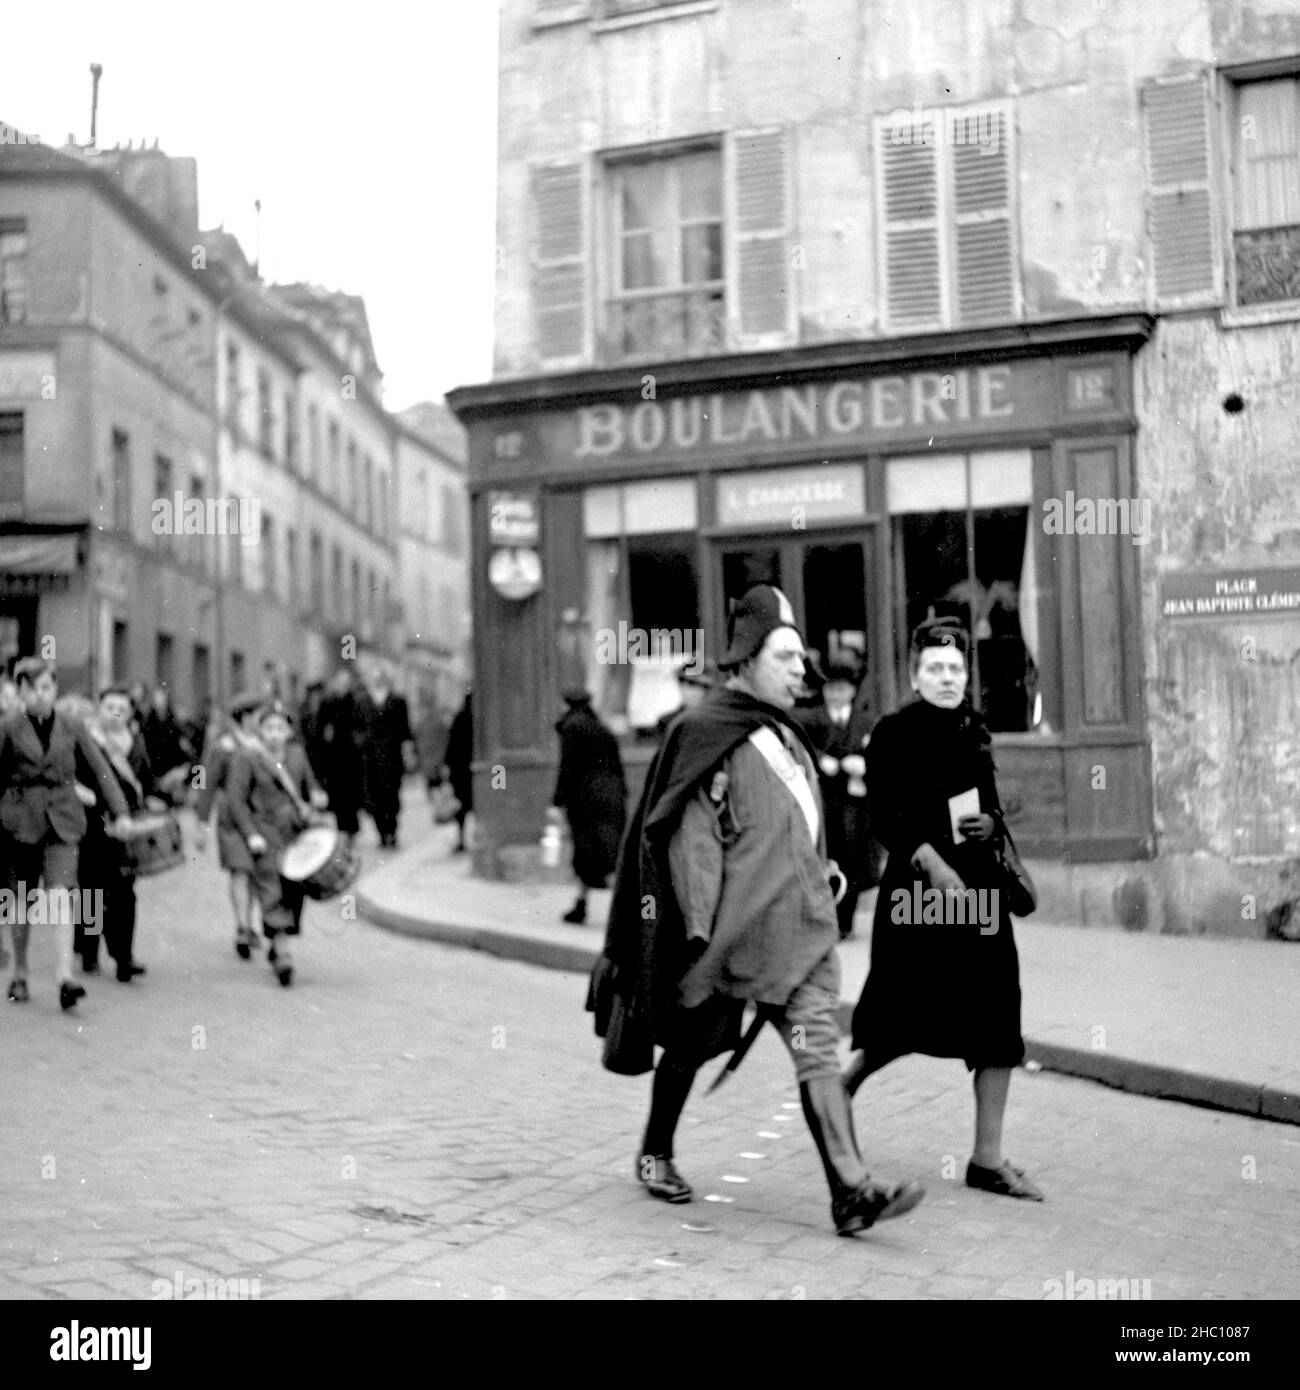 Eine Prozession im Jahr 1945 in Paris Montmartre kommt aus der Richtung Sacre-Cœur zu Fuß die Rue Norvins hinunter und links den Place Jean-Baptiste Clement hinunter. Führend ist ein älterer Mann, der einen Napoleonhut, einen Mantel und Reitstiefel trägt. Zigarre im Mund, ein Schwert baumelt an seiner linken Seite. Er scheint seinen rechten Arm verloren zu haben. Hinter ihm im marsch schlagen eine Gruppe von Jungen Trommeln. Ein von der US Navy eingesandter Mann beobachtet von einer Seite und Eine Frau beobachtet und schließt sich dann an die Spitze der Gruppe an. Der Konsulat d’Auvergne und das Restaurant L’ambassade und die Cafés Gilbert sind zu sehen Stockfoto